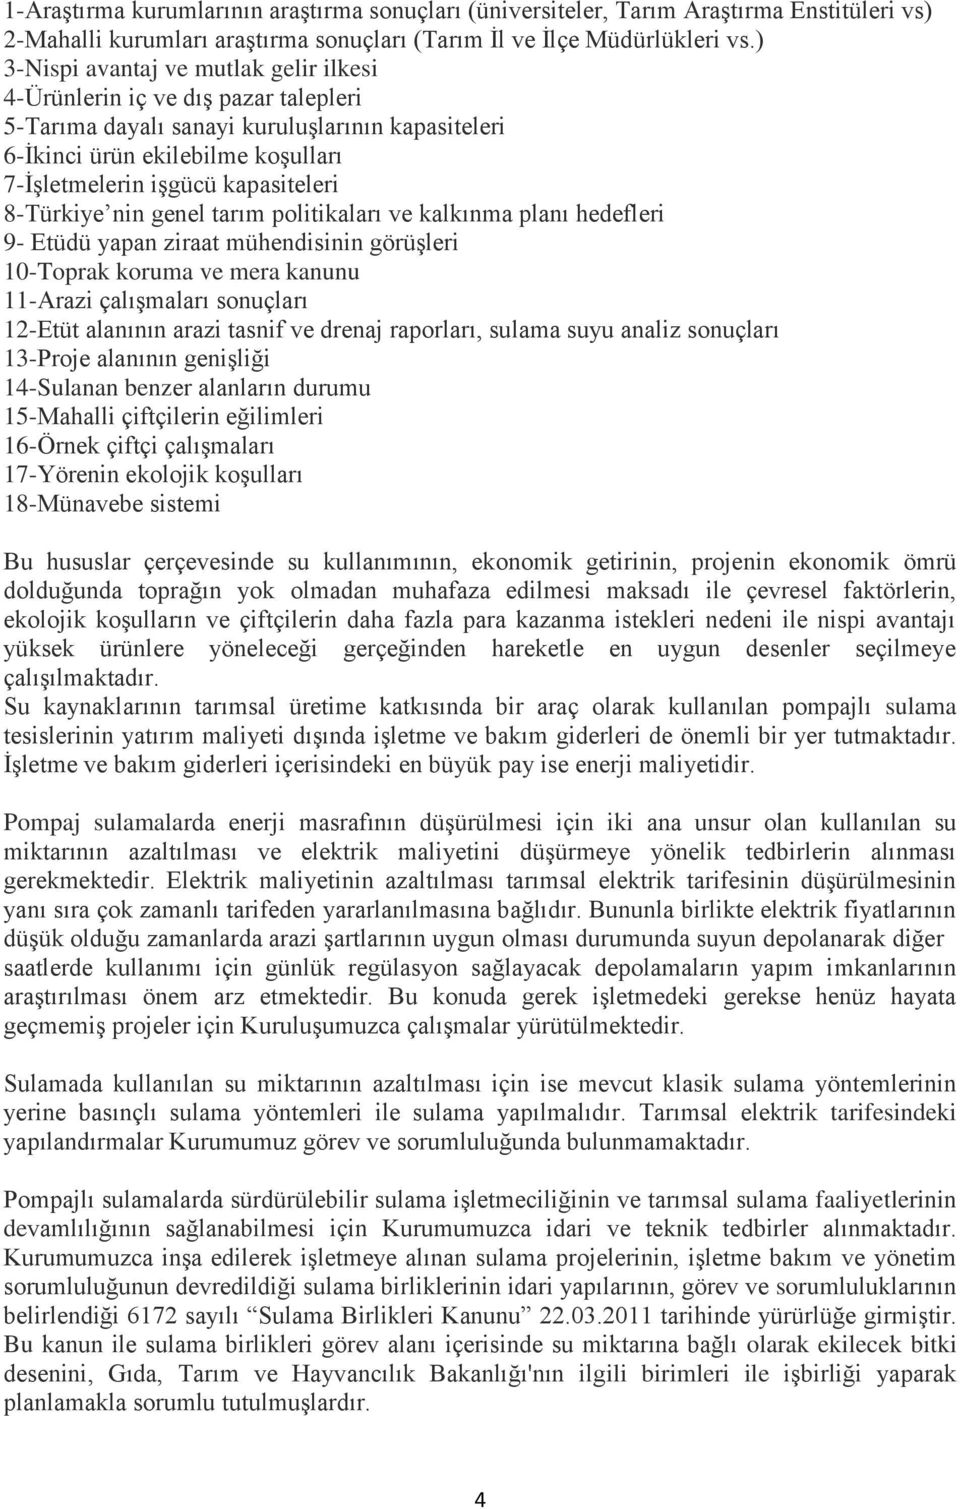 8-Türkiye nin genel tarım politikaları ve kalkınma planı hedefleri 9- Etüdü yapan ziraat mühendisinin görüģleri 10-Toprak koruma ve mera kanunu 11-Arazi çalıģmaları sonuçları 12-Etüt alanının arazi